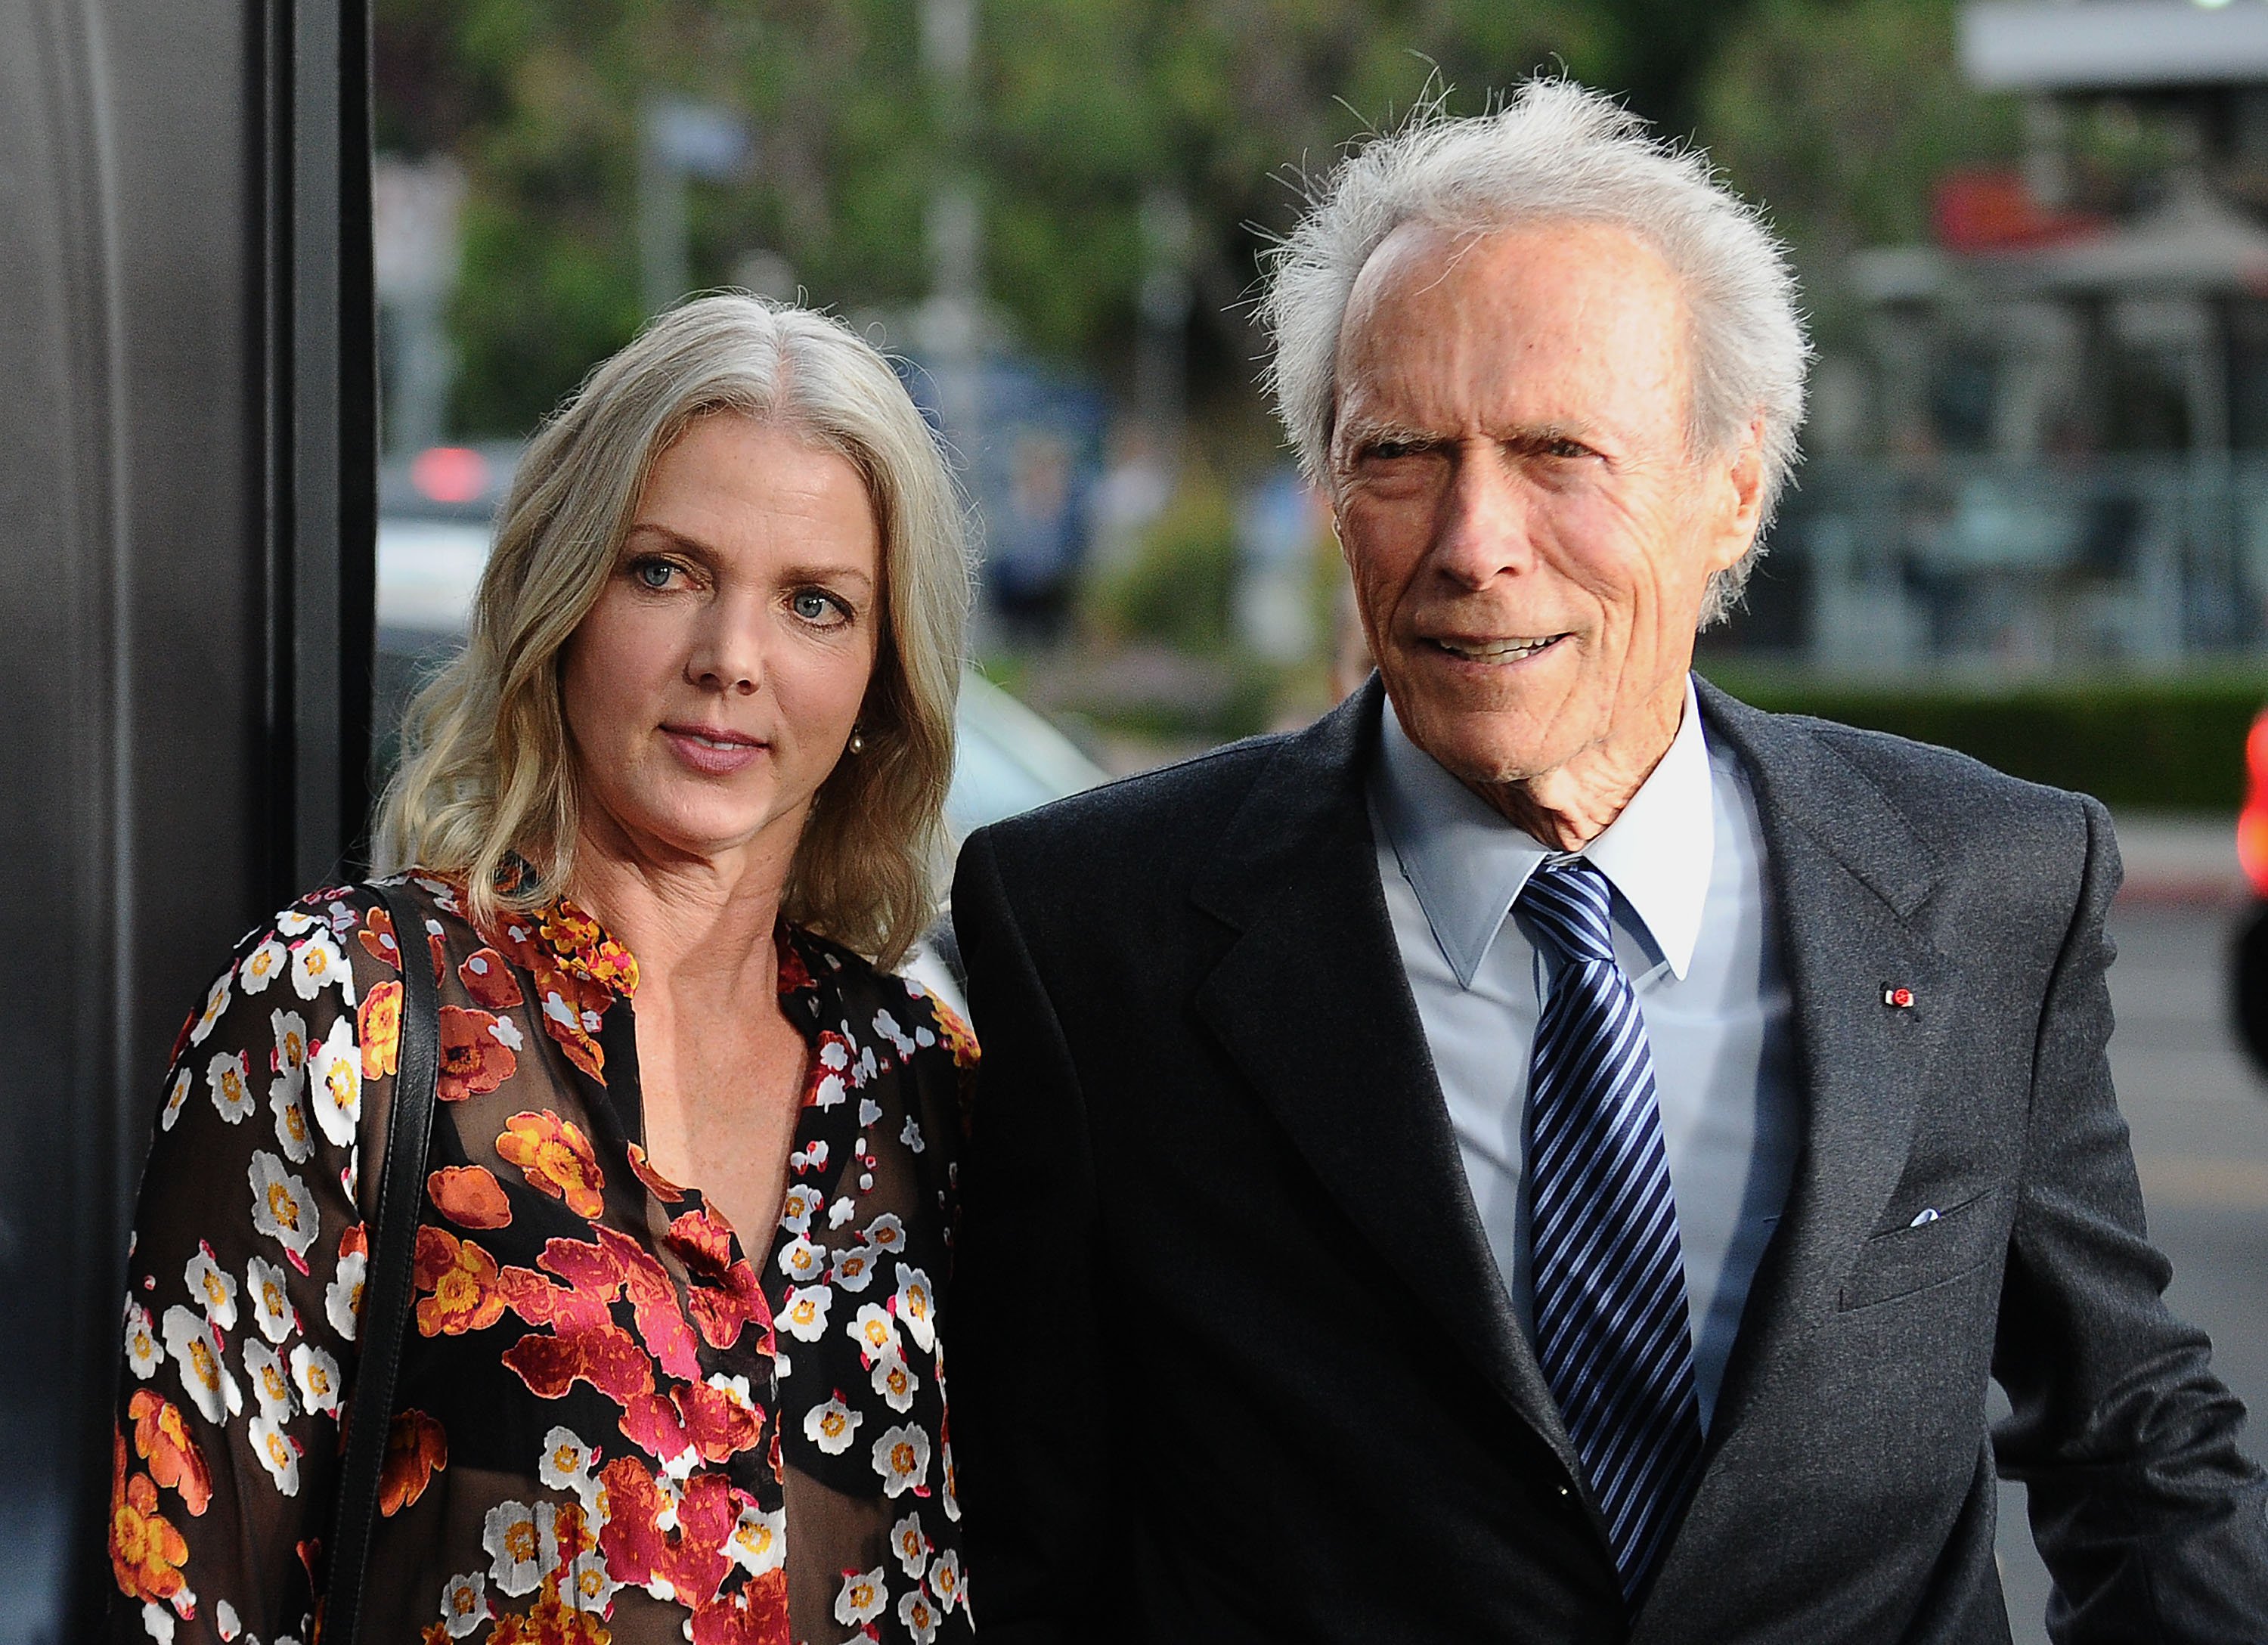 Clint Eastwood y Christina Sandera en una proyección de "Sully" en Directors Guild Of America, el 8 de septiembre de 2016 en Los Ángeles, California. | Foto: Getty Images